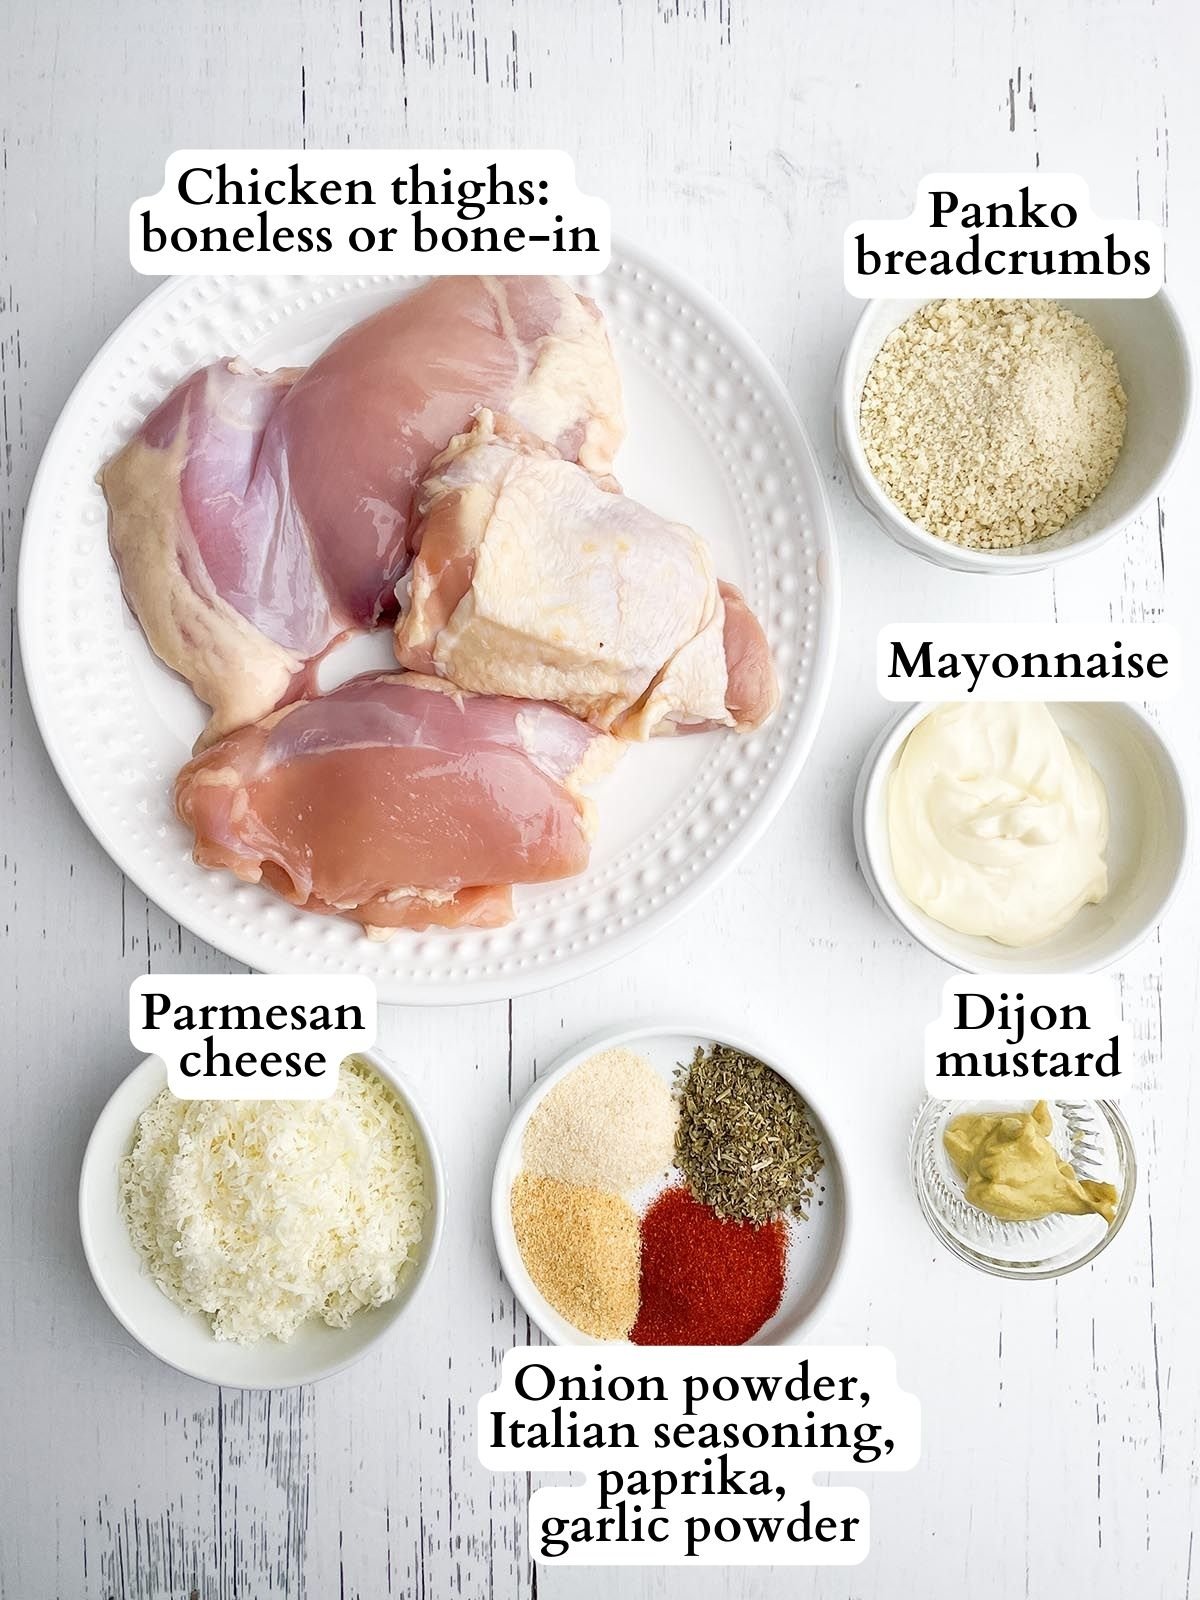 air fryer panko chicken thighs ingredients